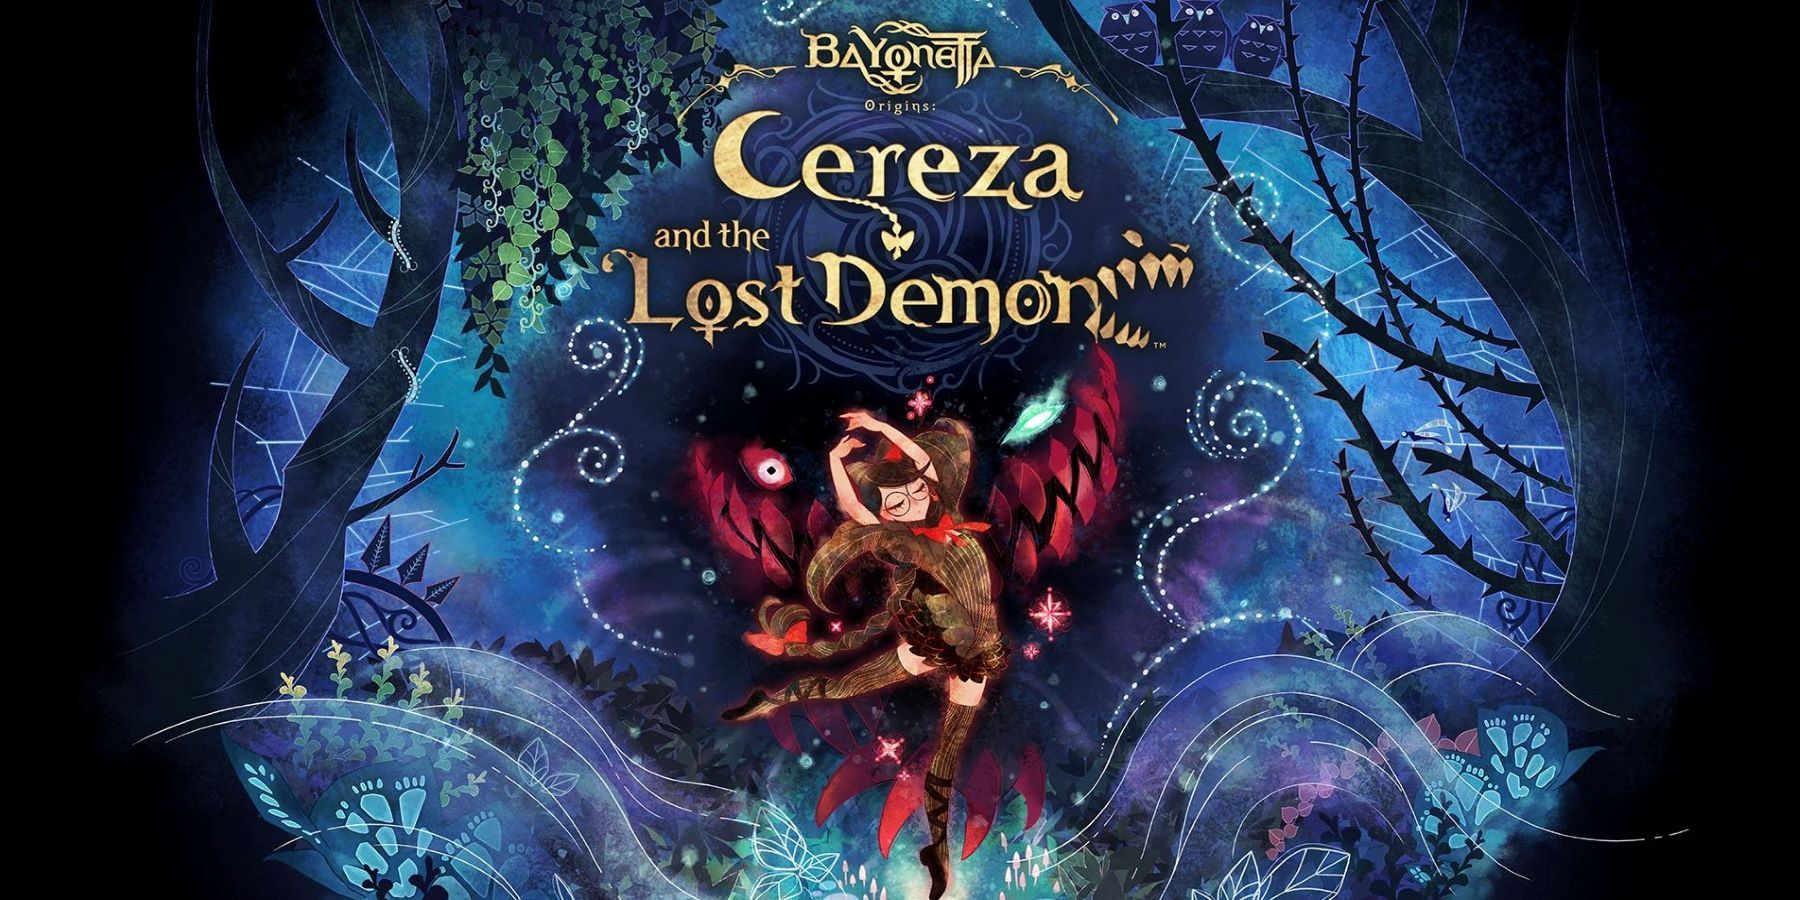 Cover art for Bayonetta Origins: Cereza and the Lost Demon